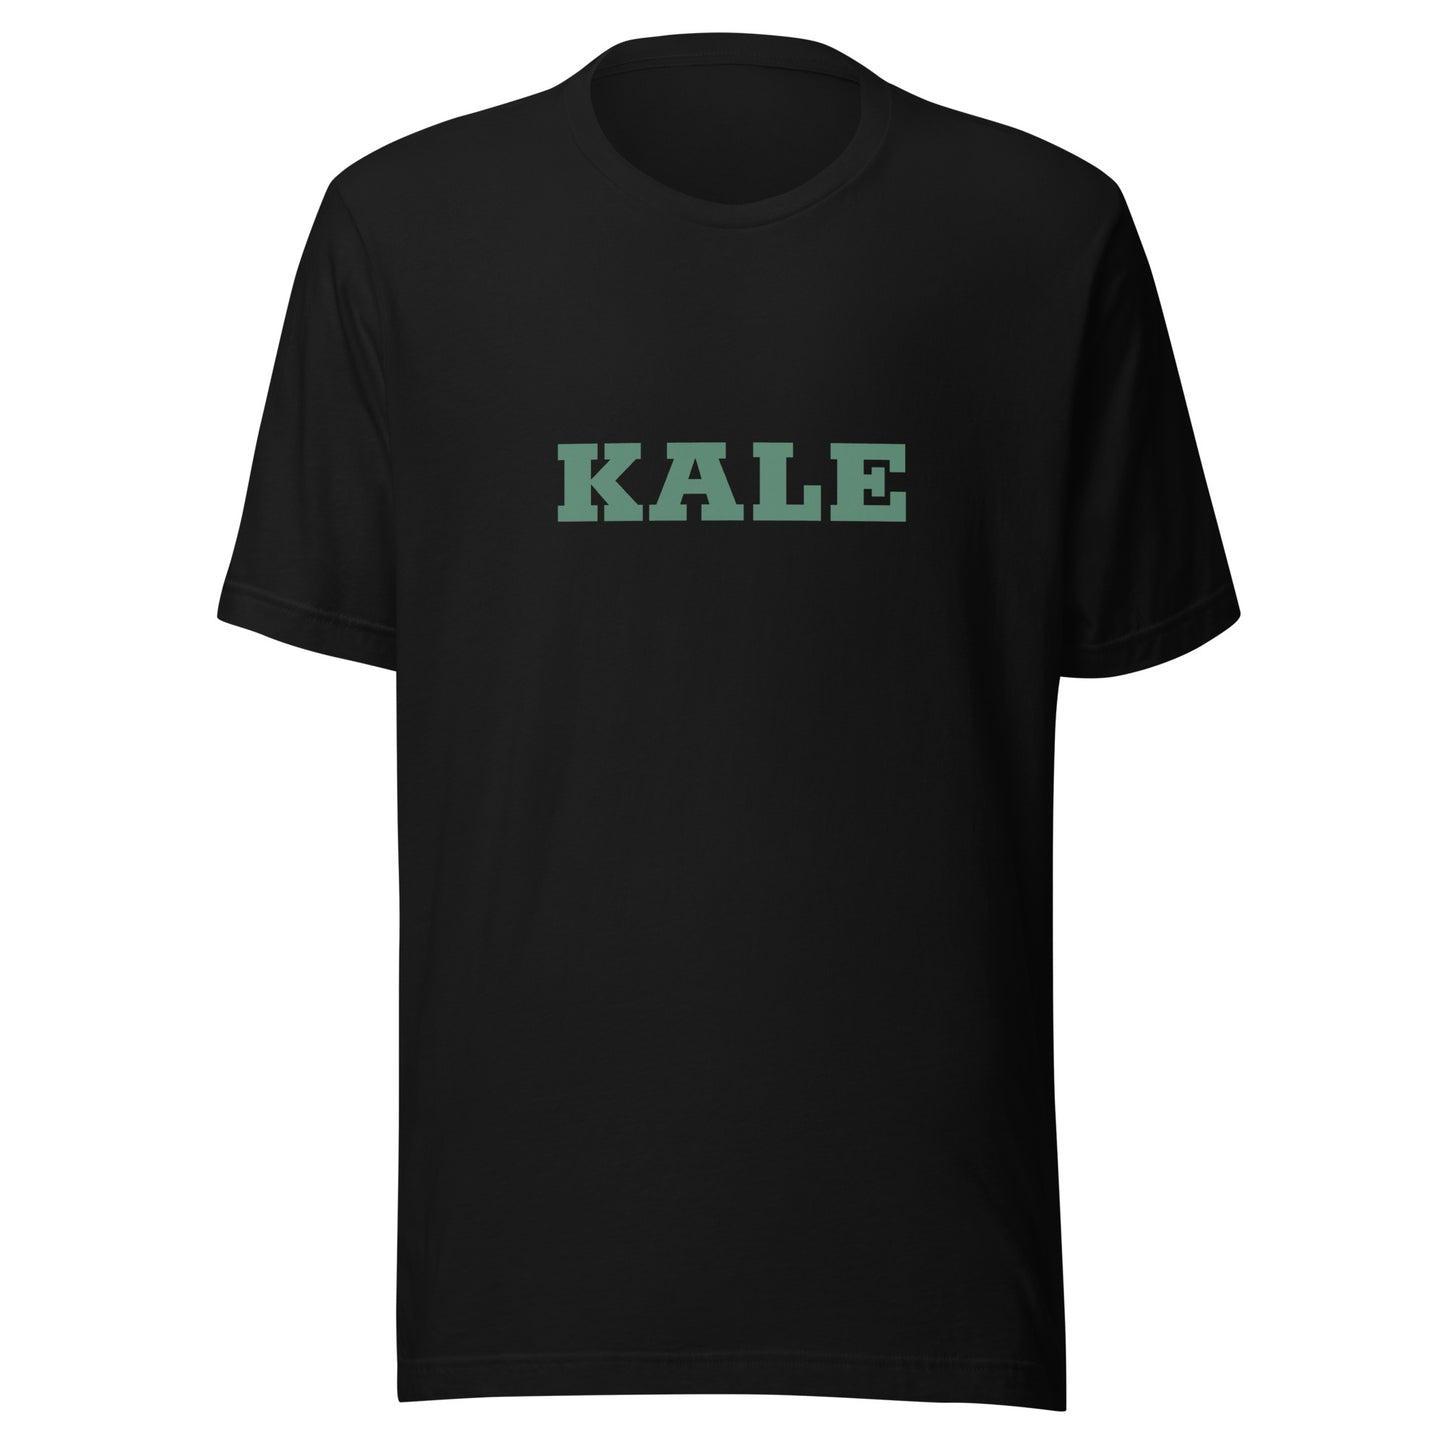 KALE T-Shirt | Art in Aging